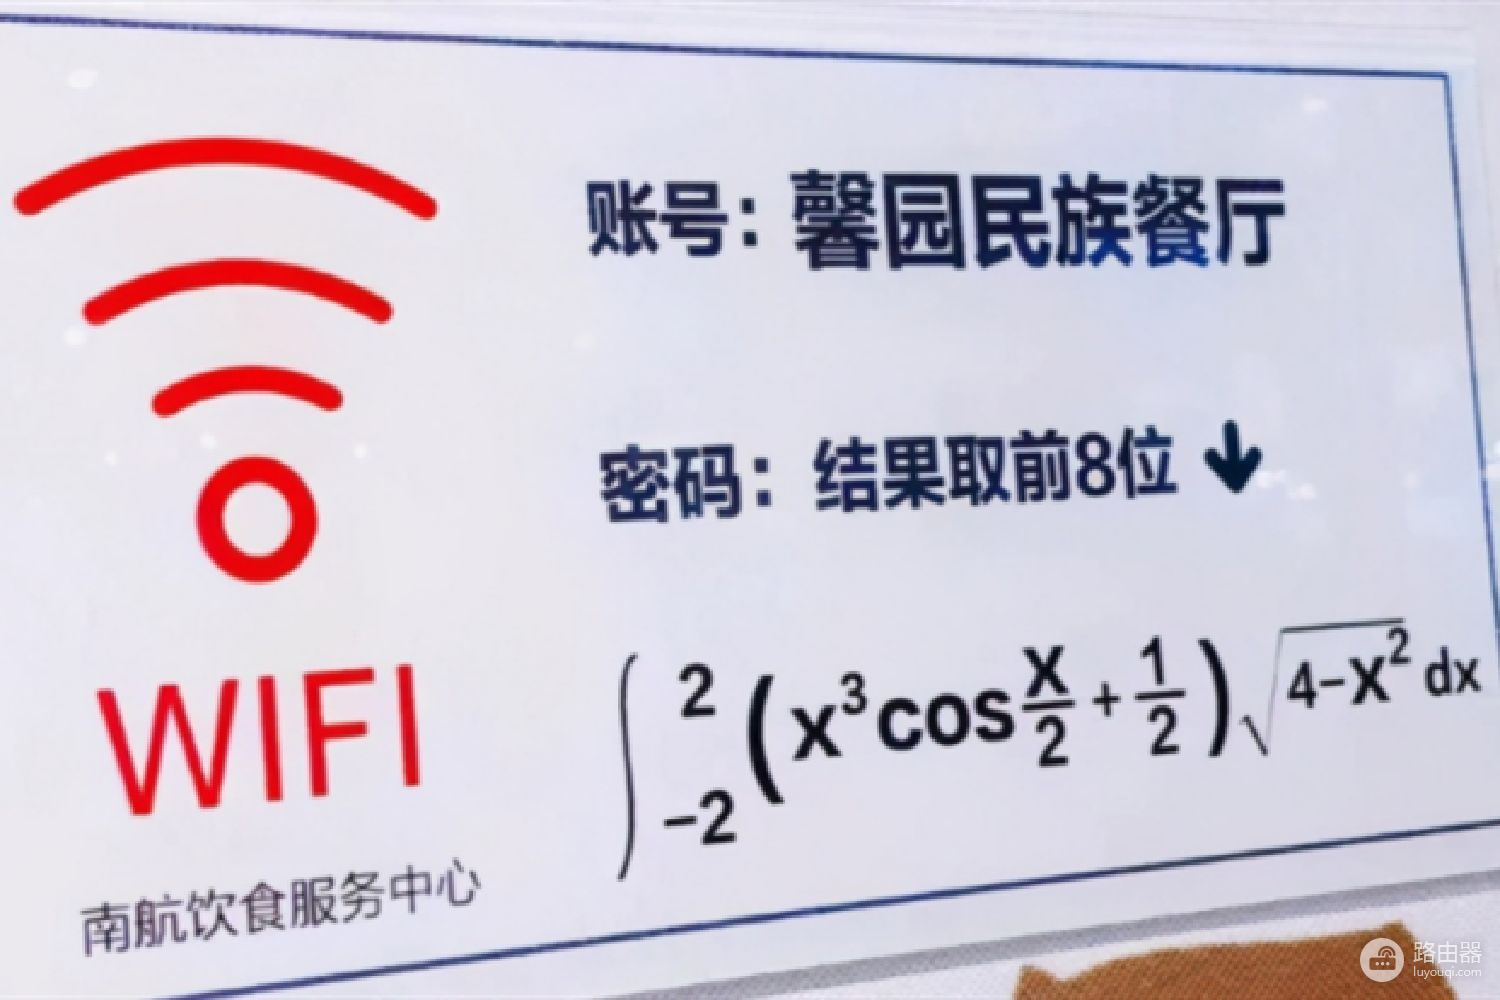 南京某大学食堂wifi密码为微积分(南京一大学食堂wifi密码)